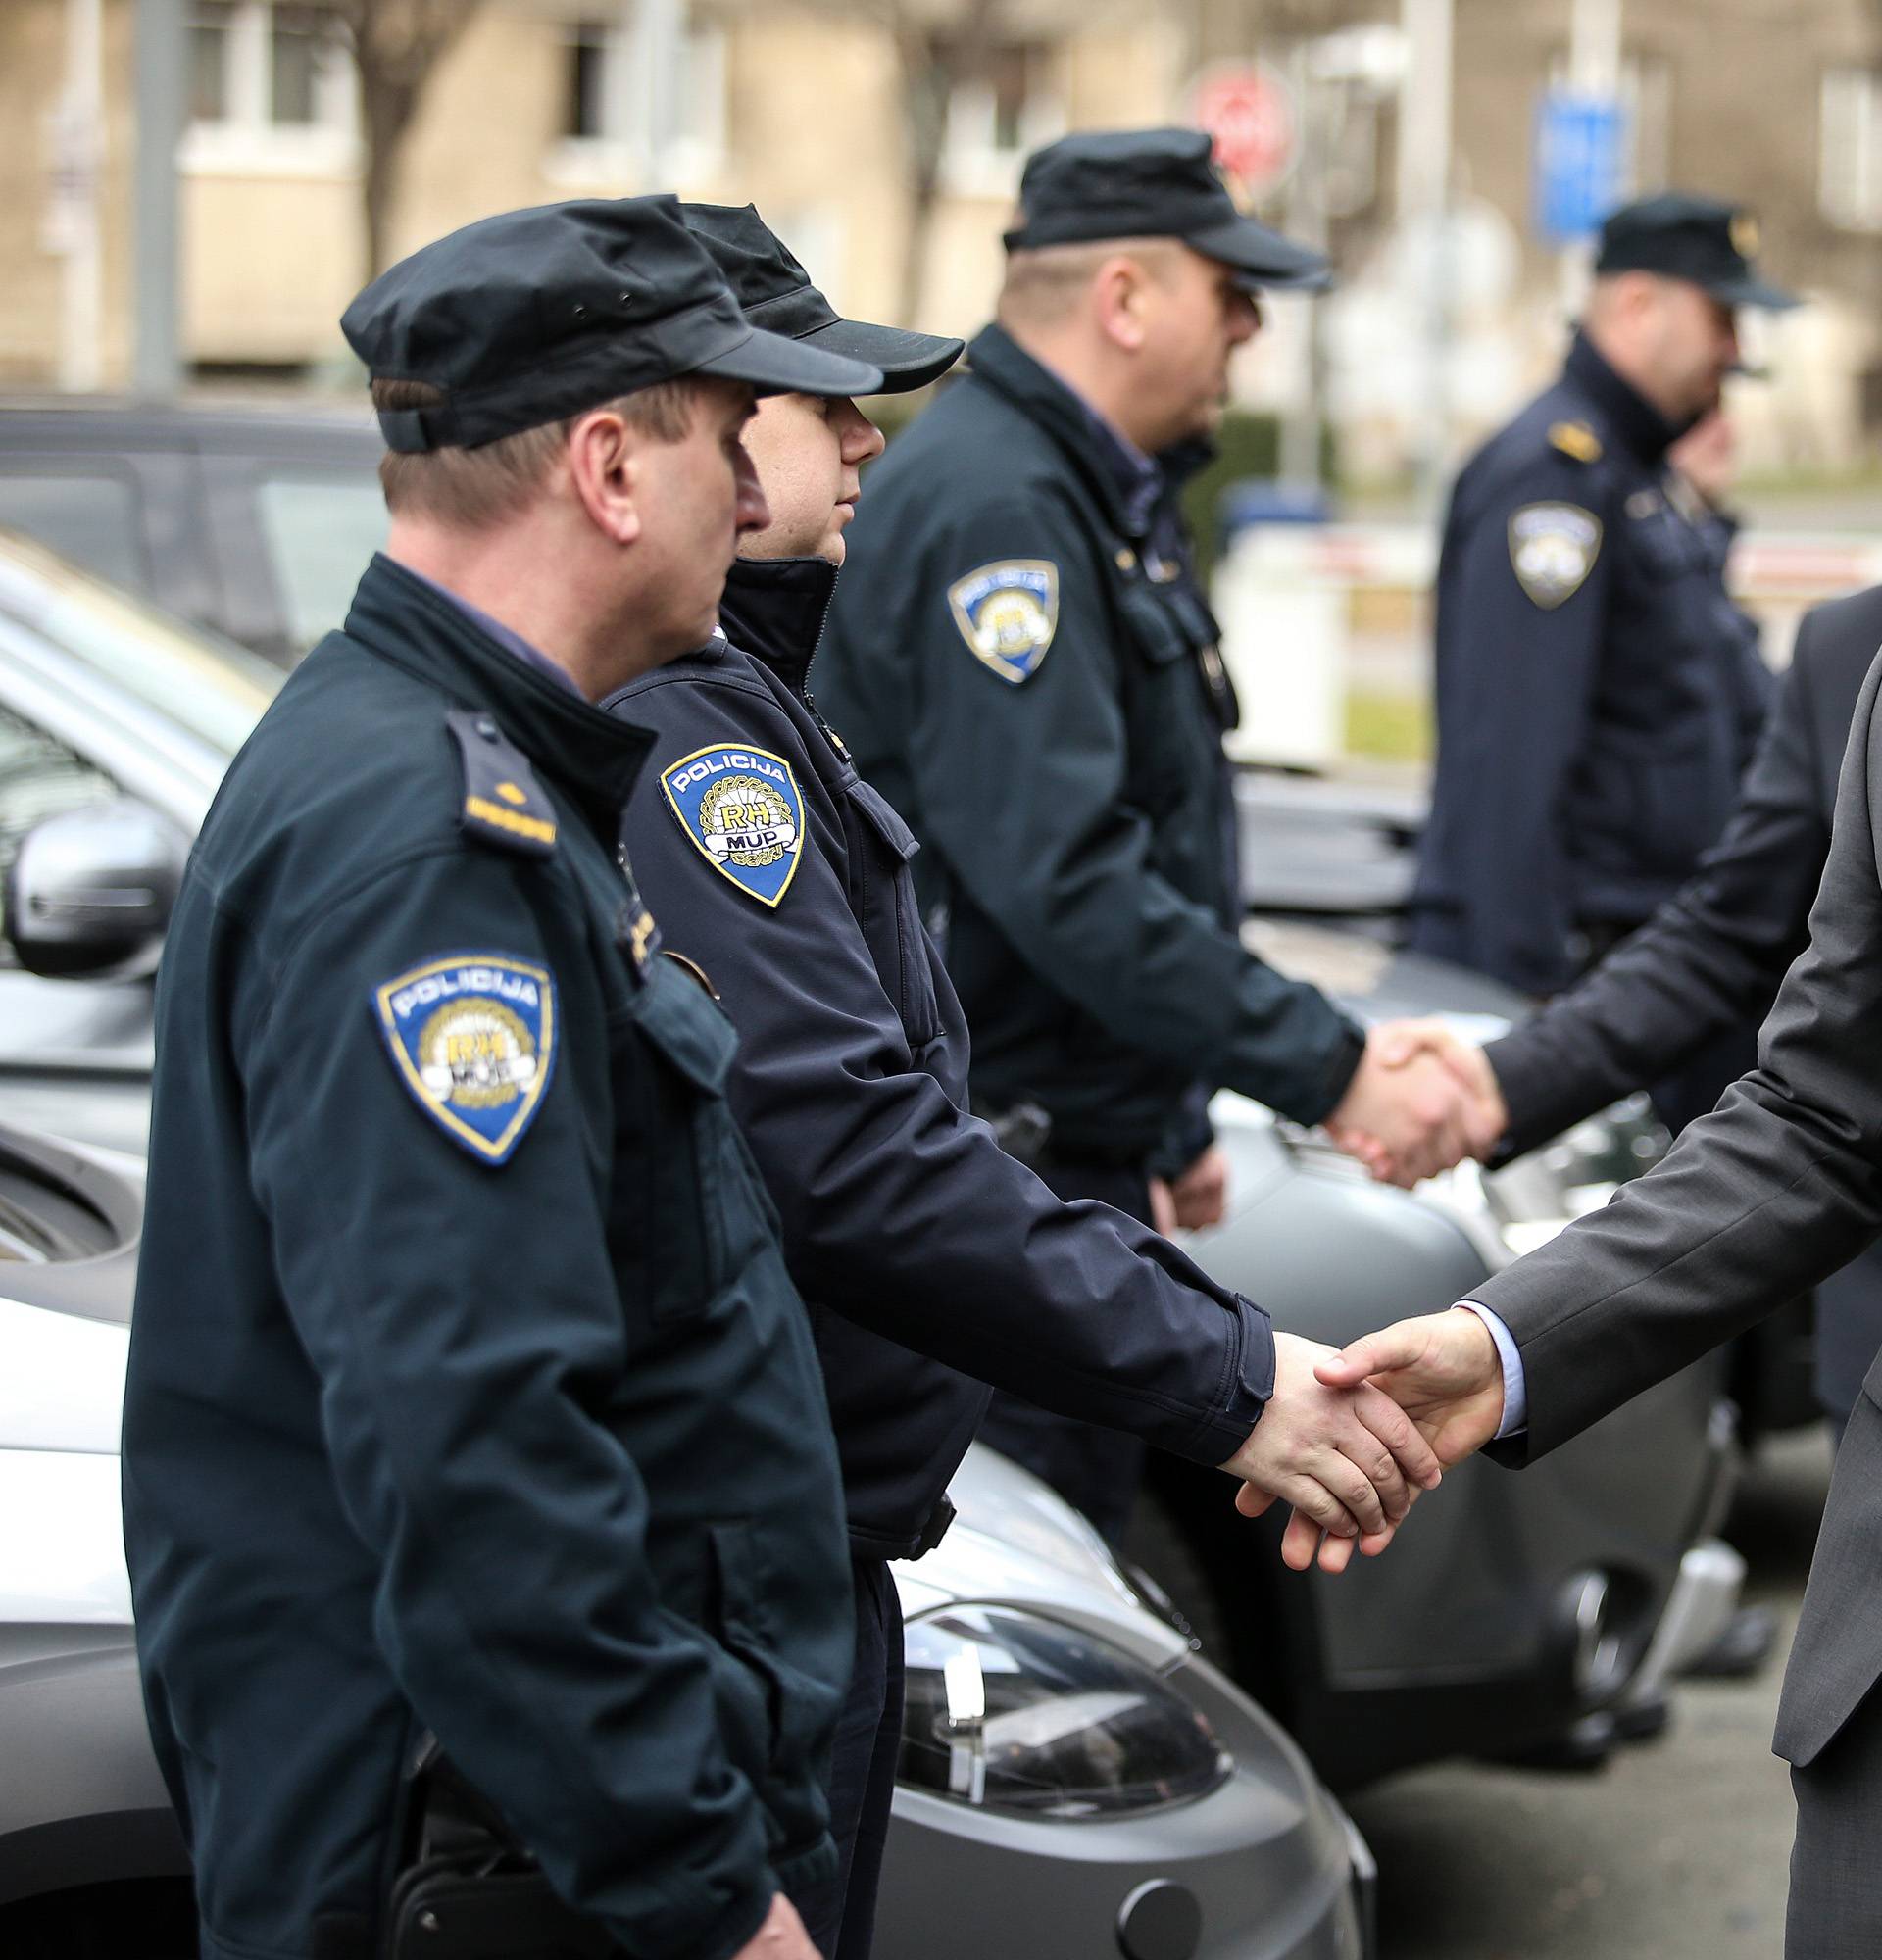 Zamjenicima i pomoćnicima Orepić ukinuo službene aute